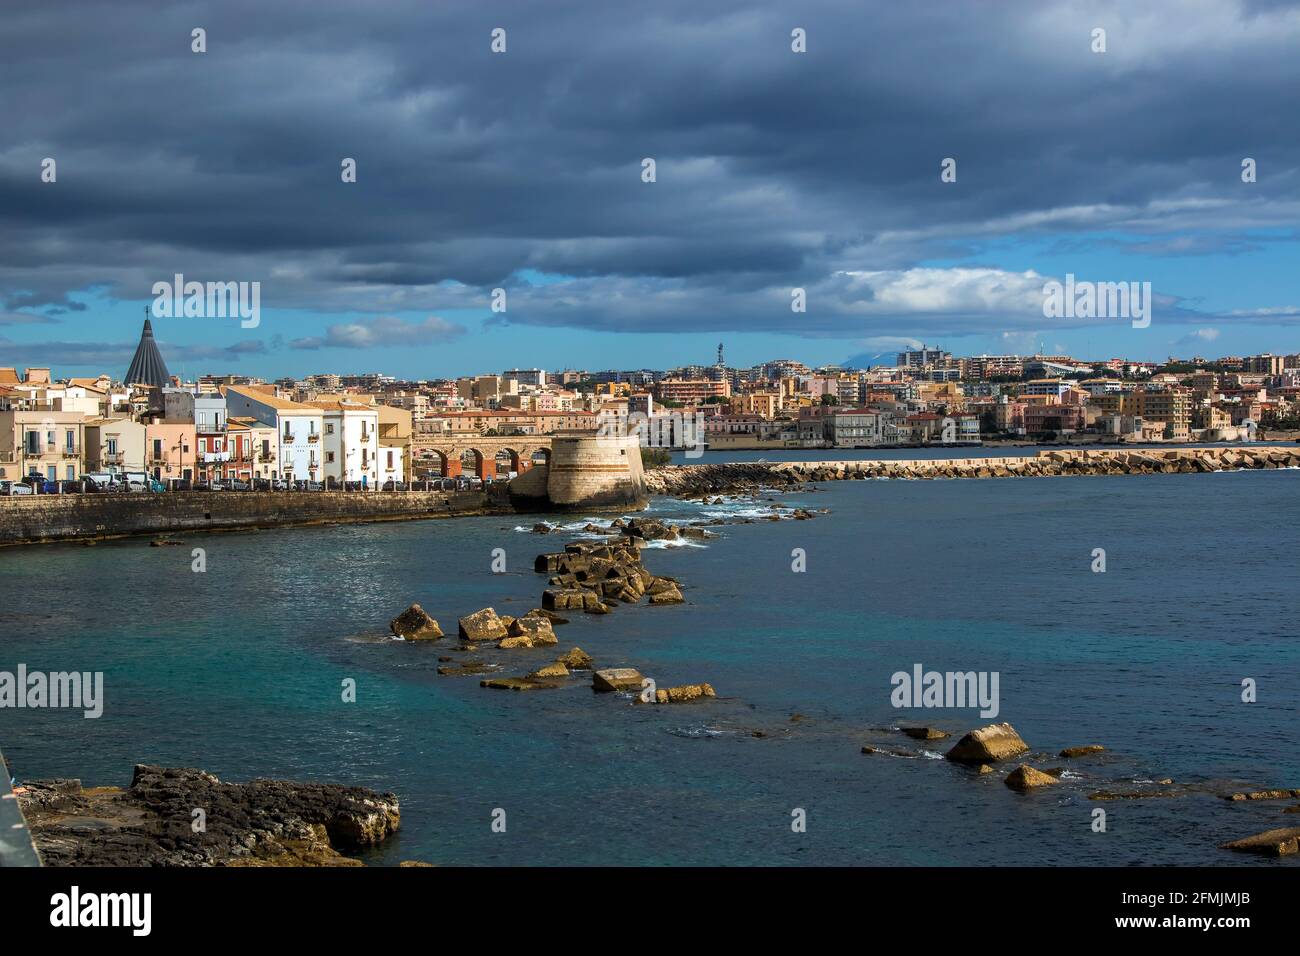 italy, Sicily, syracuse Stock Photo